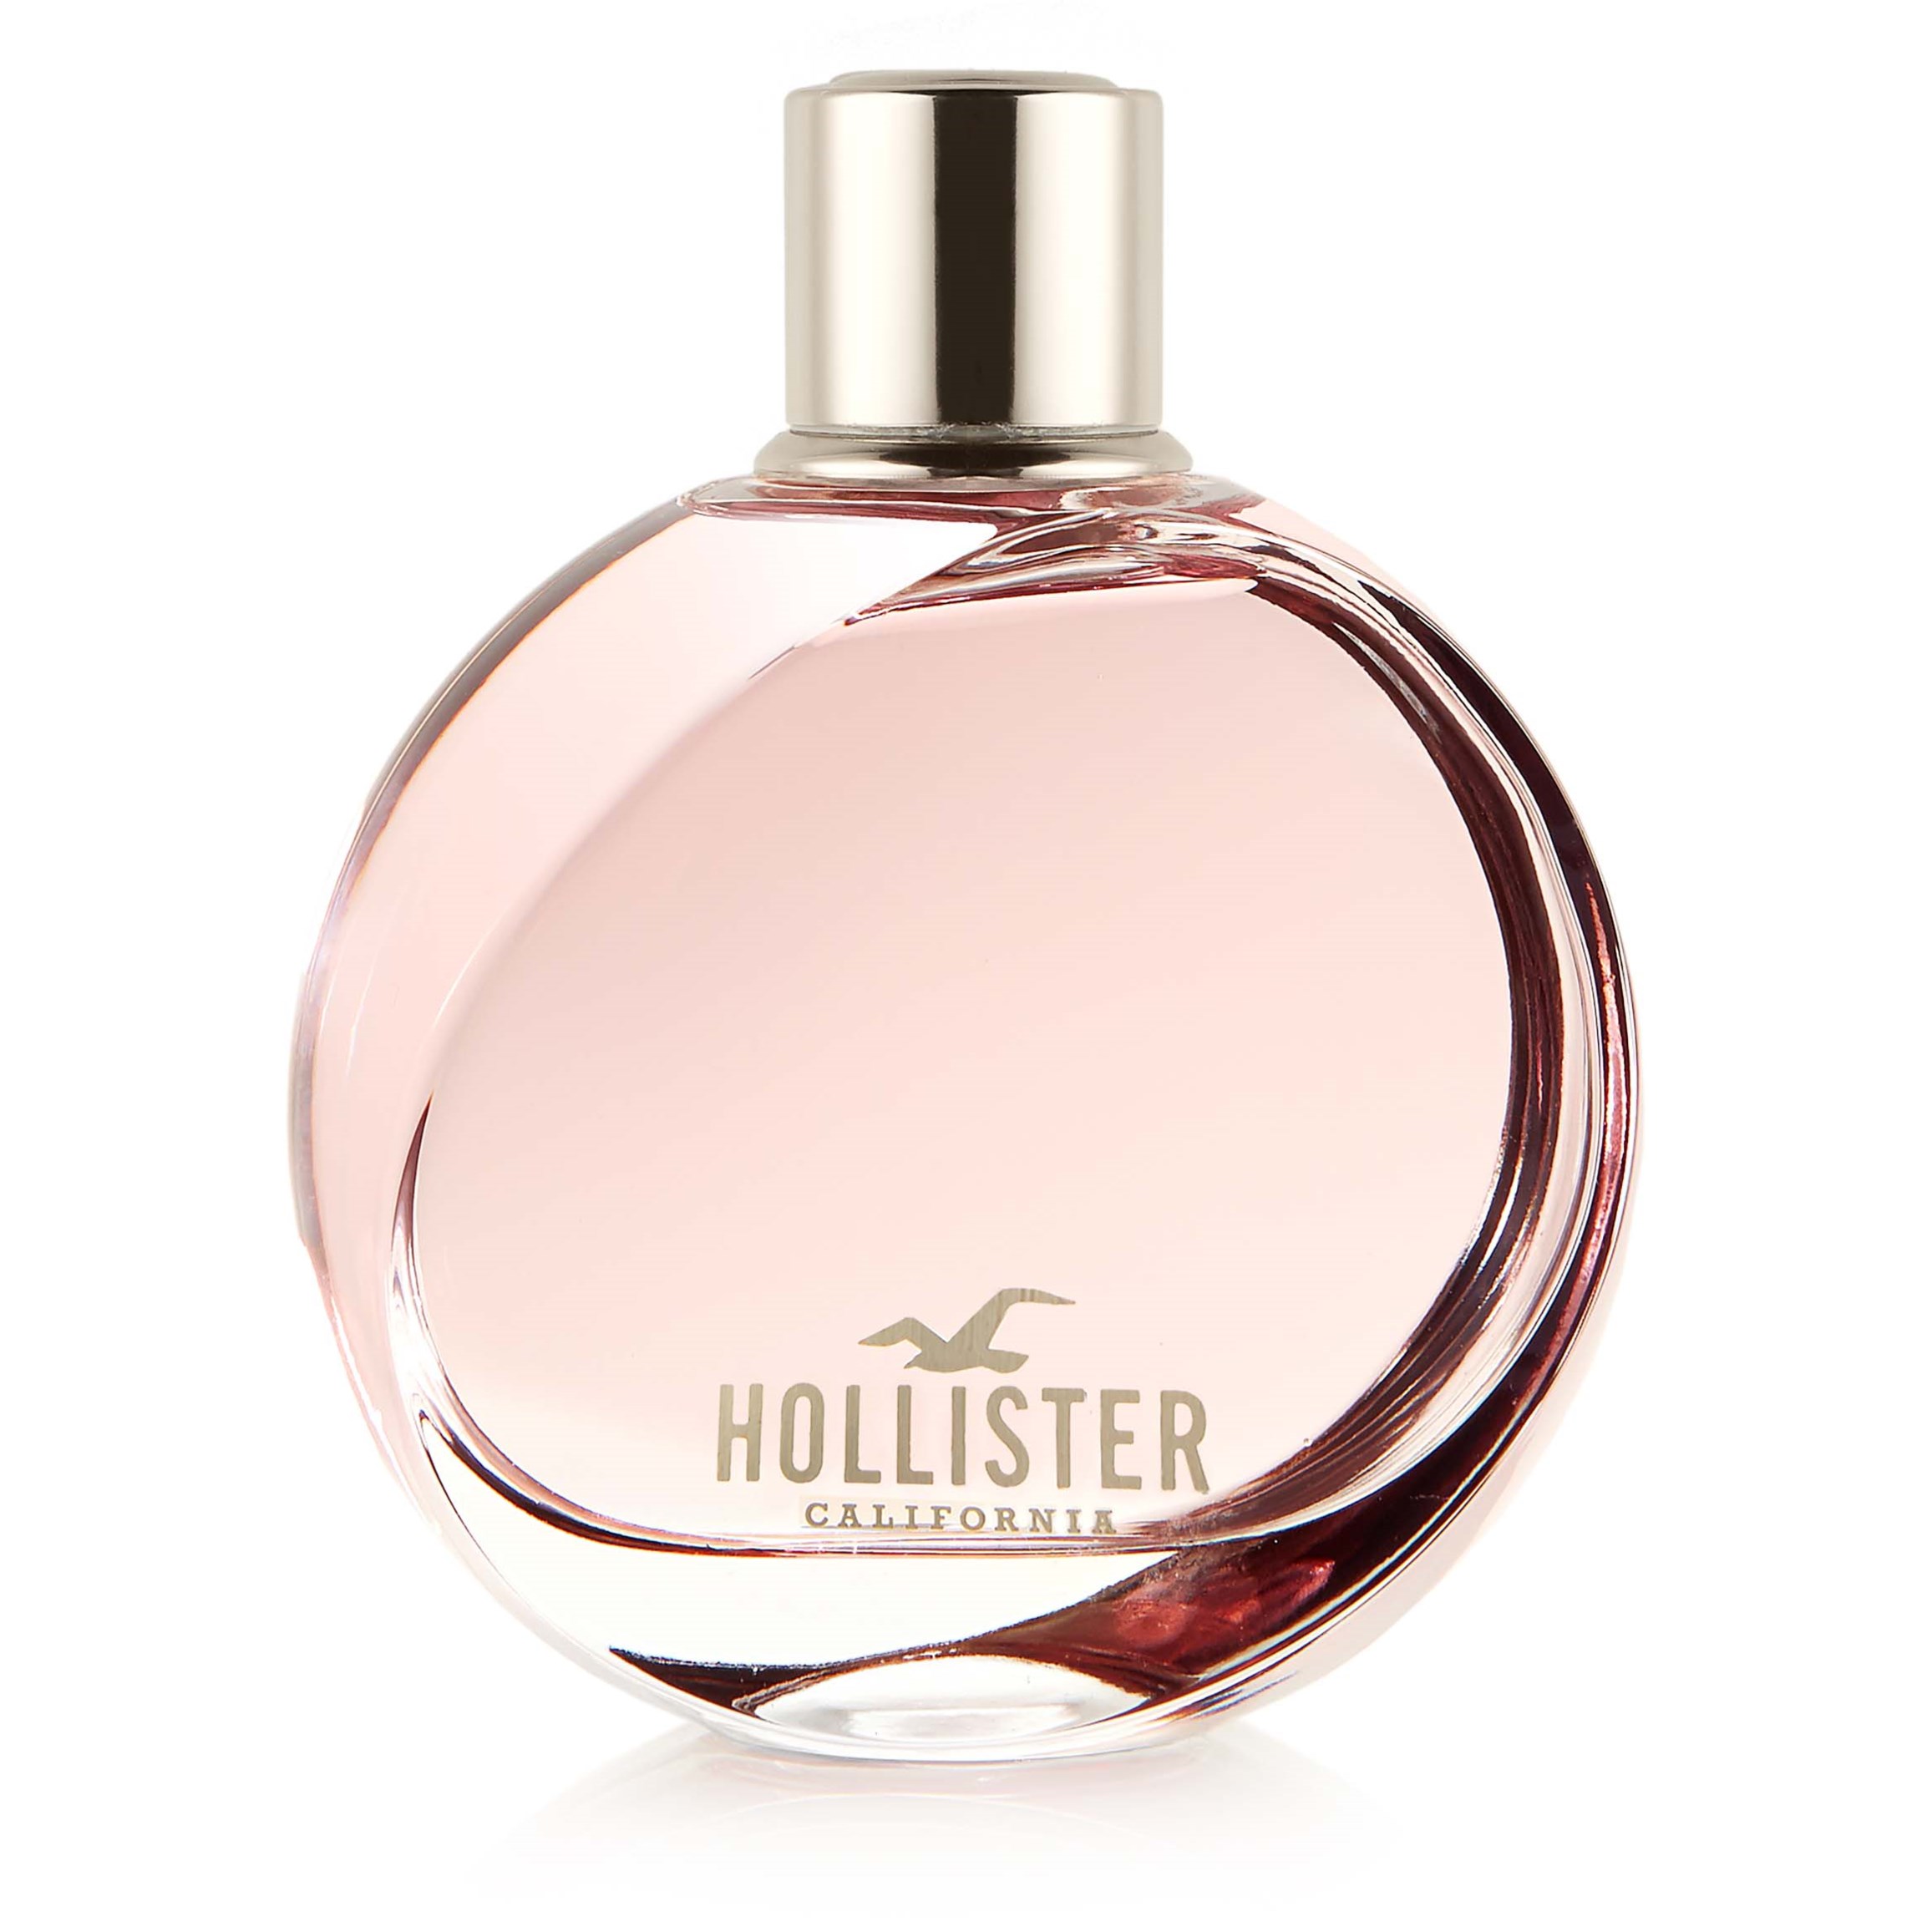 Hollister Wave For Her Eau de Parfum 30 ml